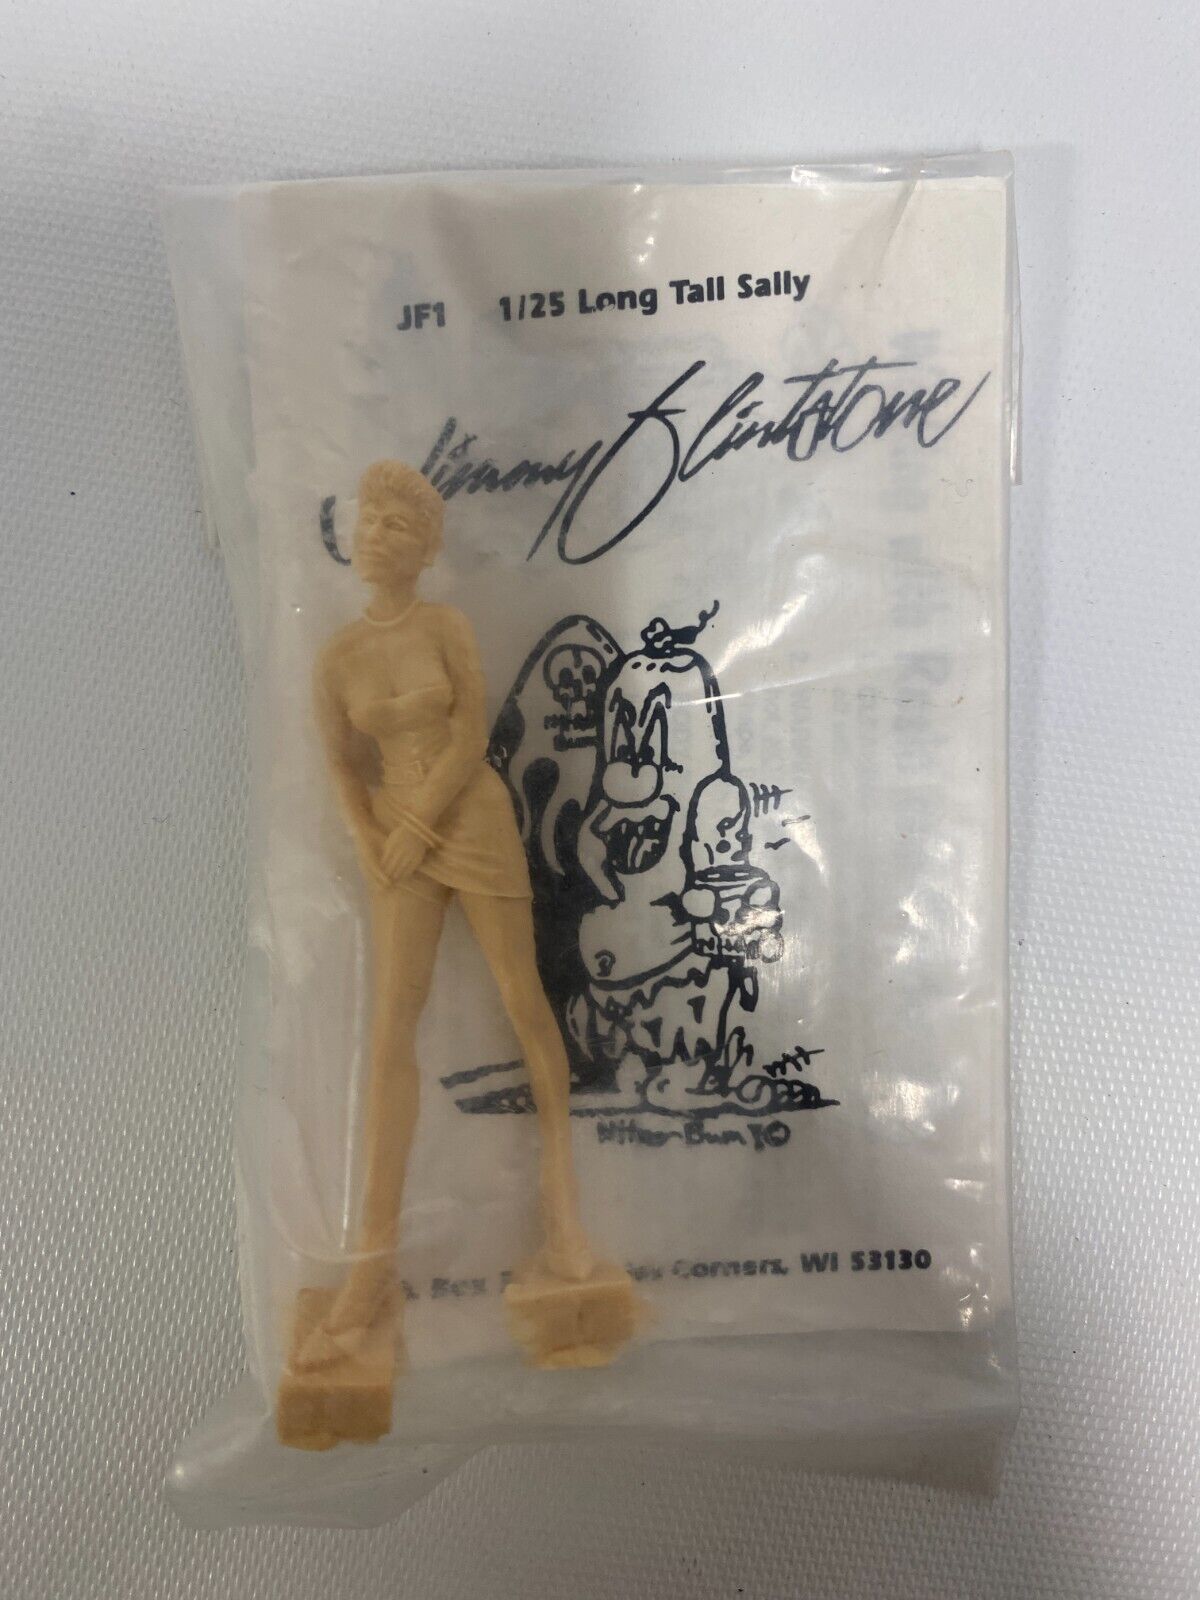 Jimmy Flintstone Figure JF1 LONG TALL SALLY - 1/25 Scale Resin